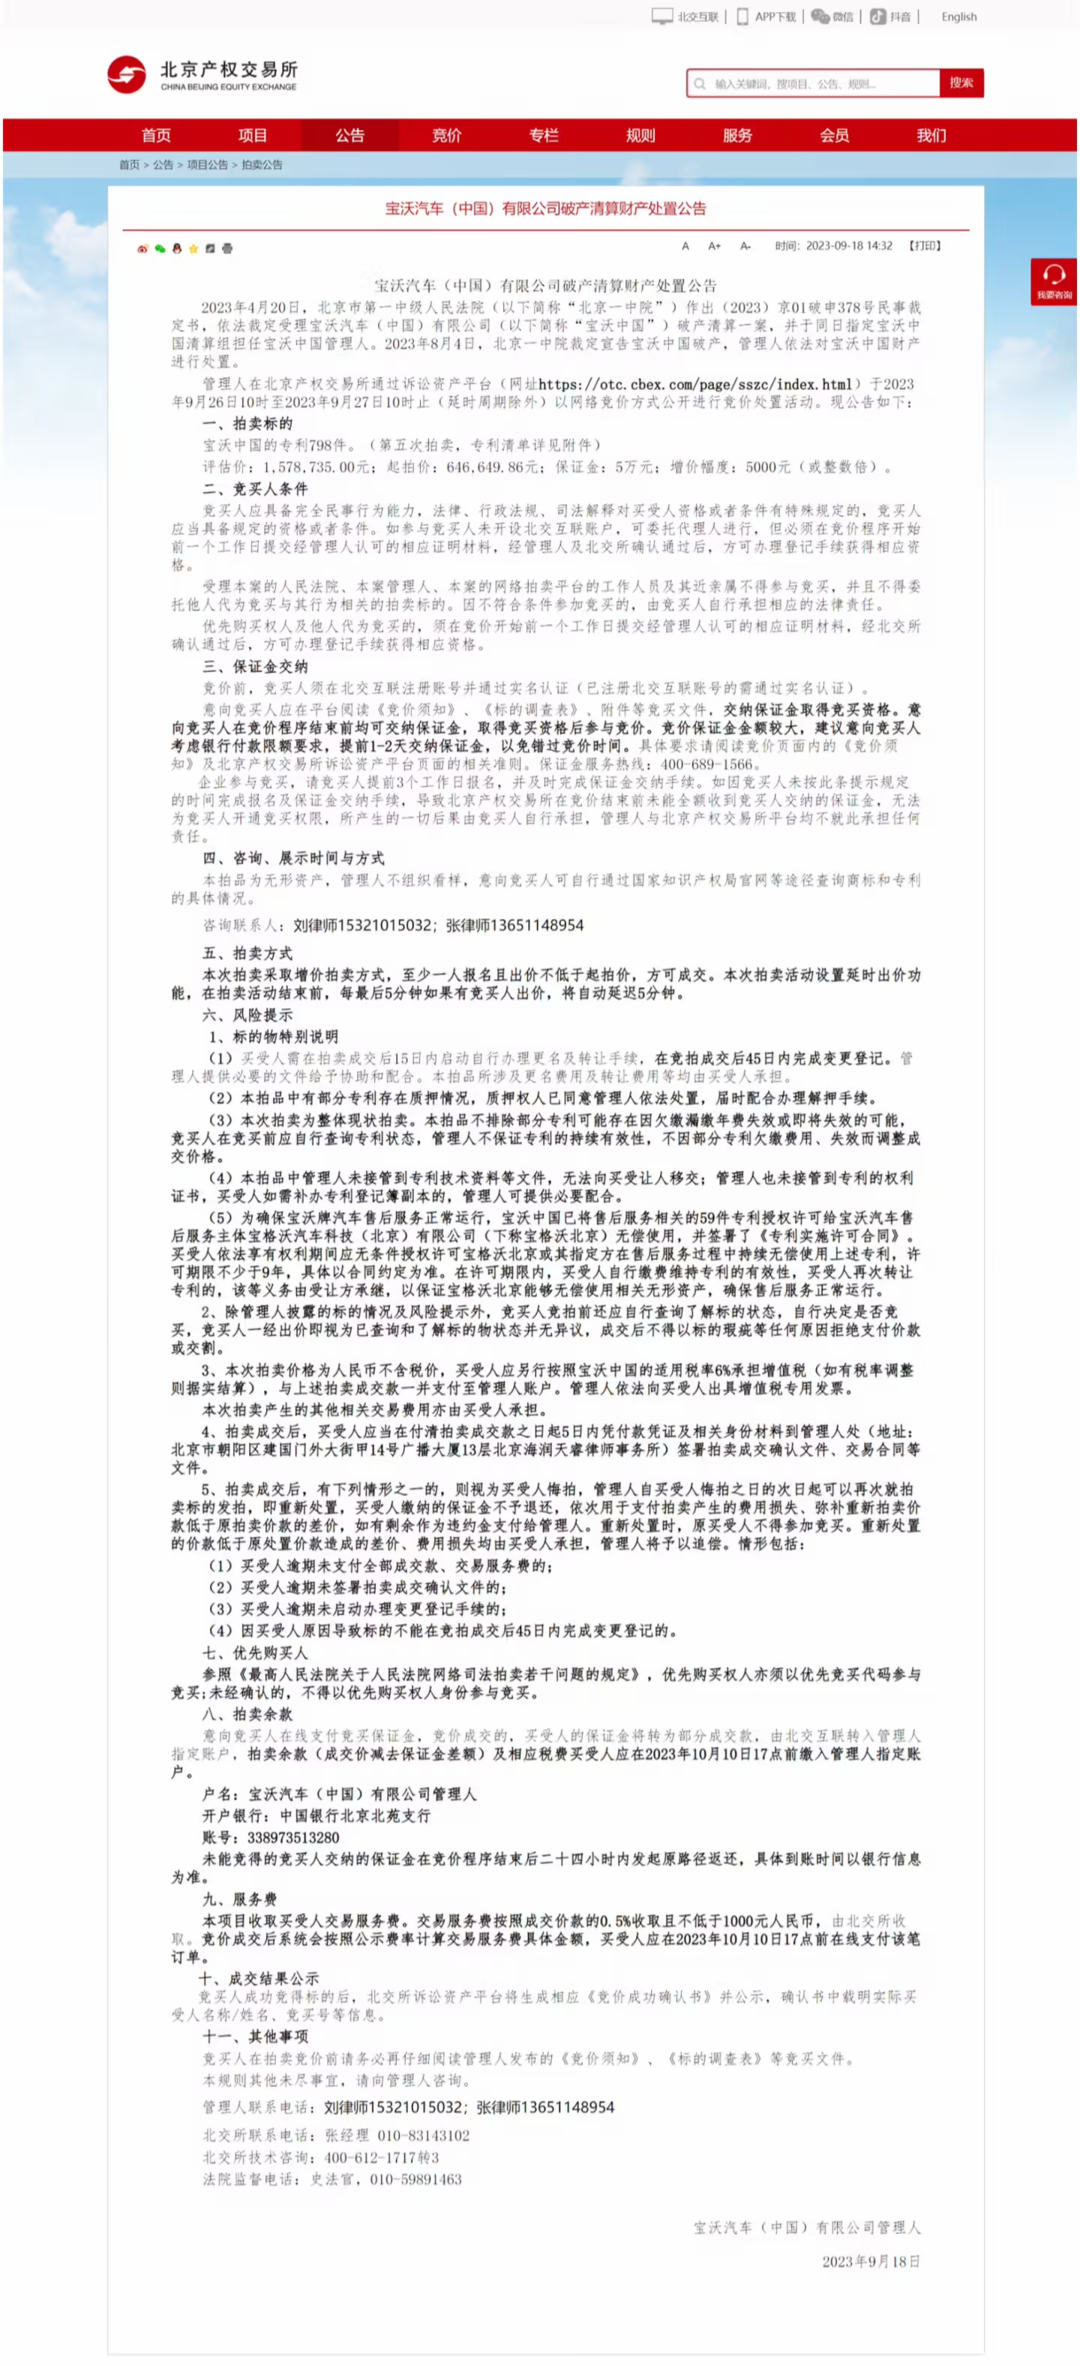 宝沃中国破产清算财产处置公布：专利 798 件，起拍价约 64.7 万元